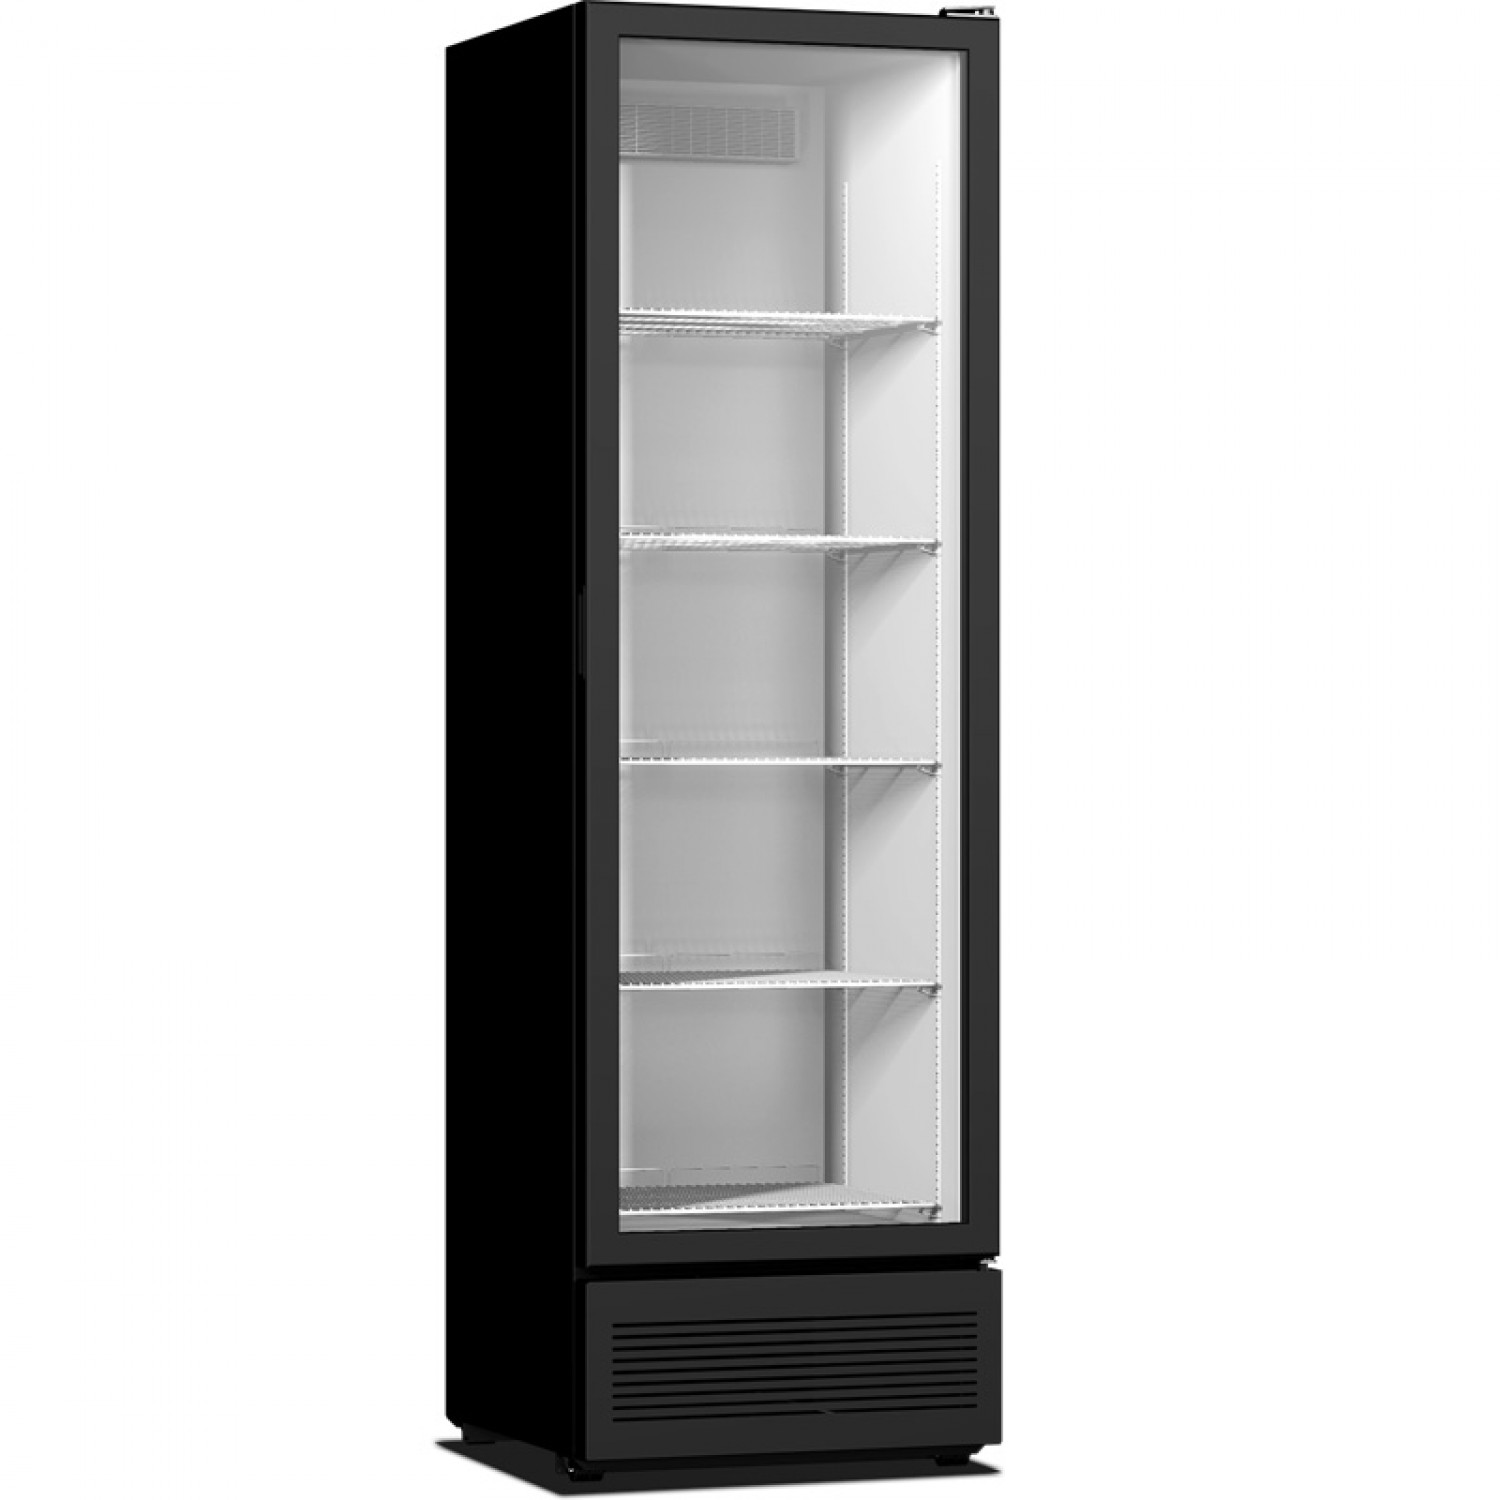 Ψυγείο αναψυκτικών Crystal Amazon Eco